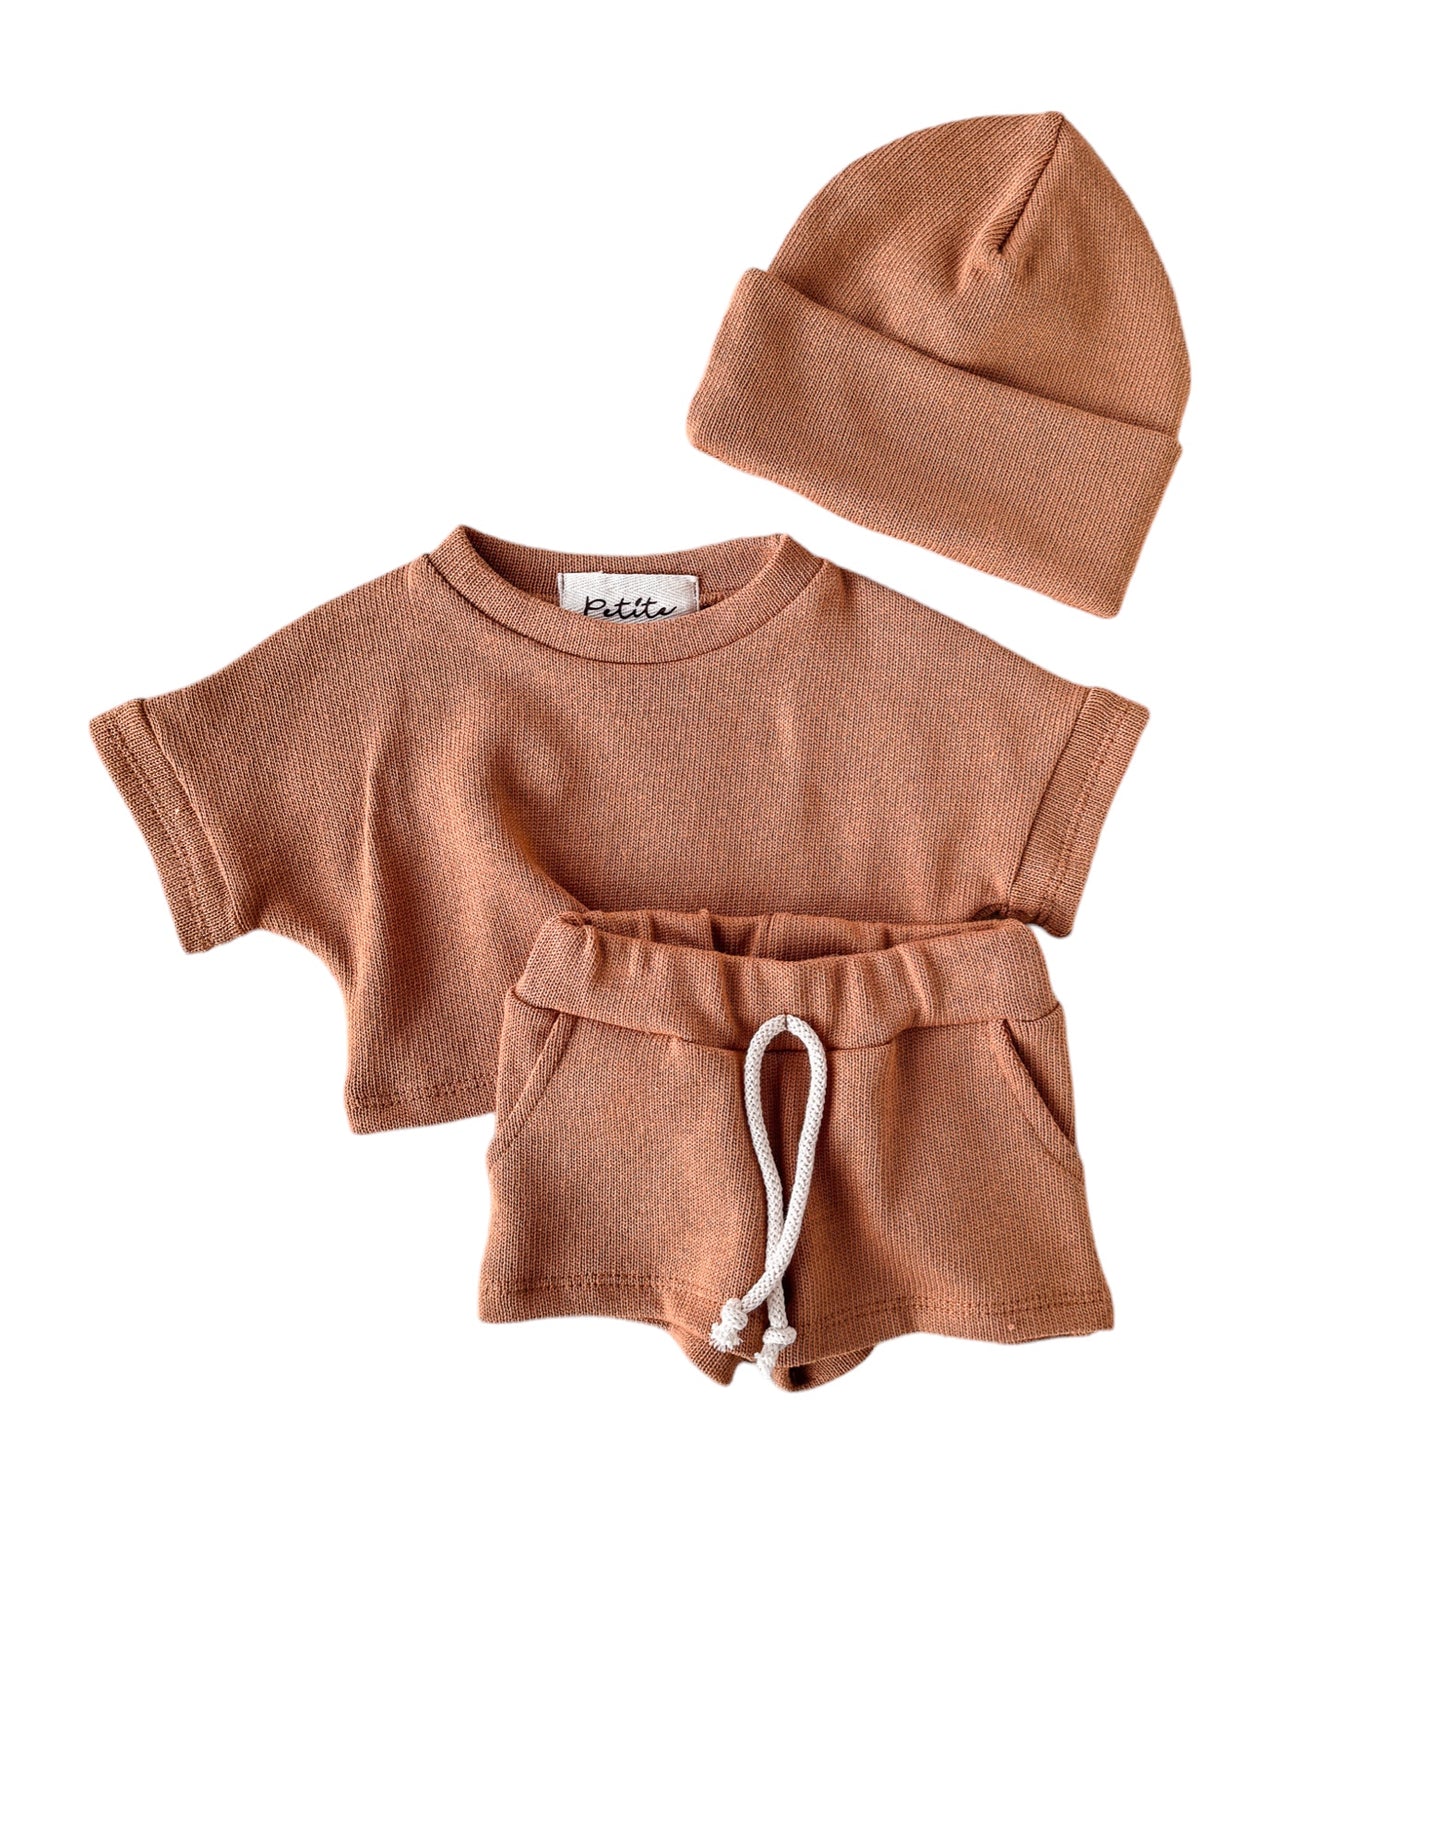 Knit shorts + top + beanie / cinnamon